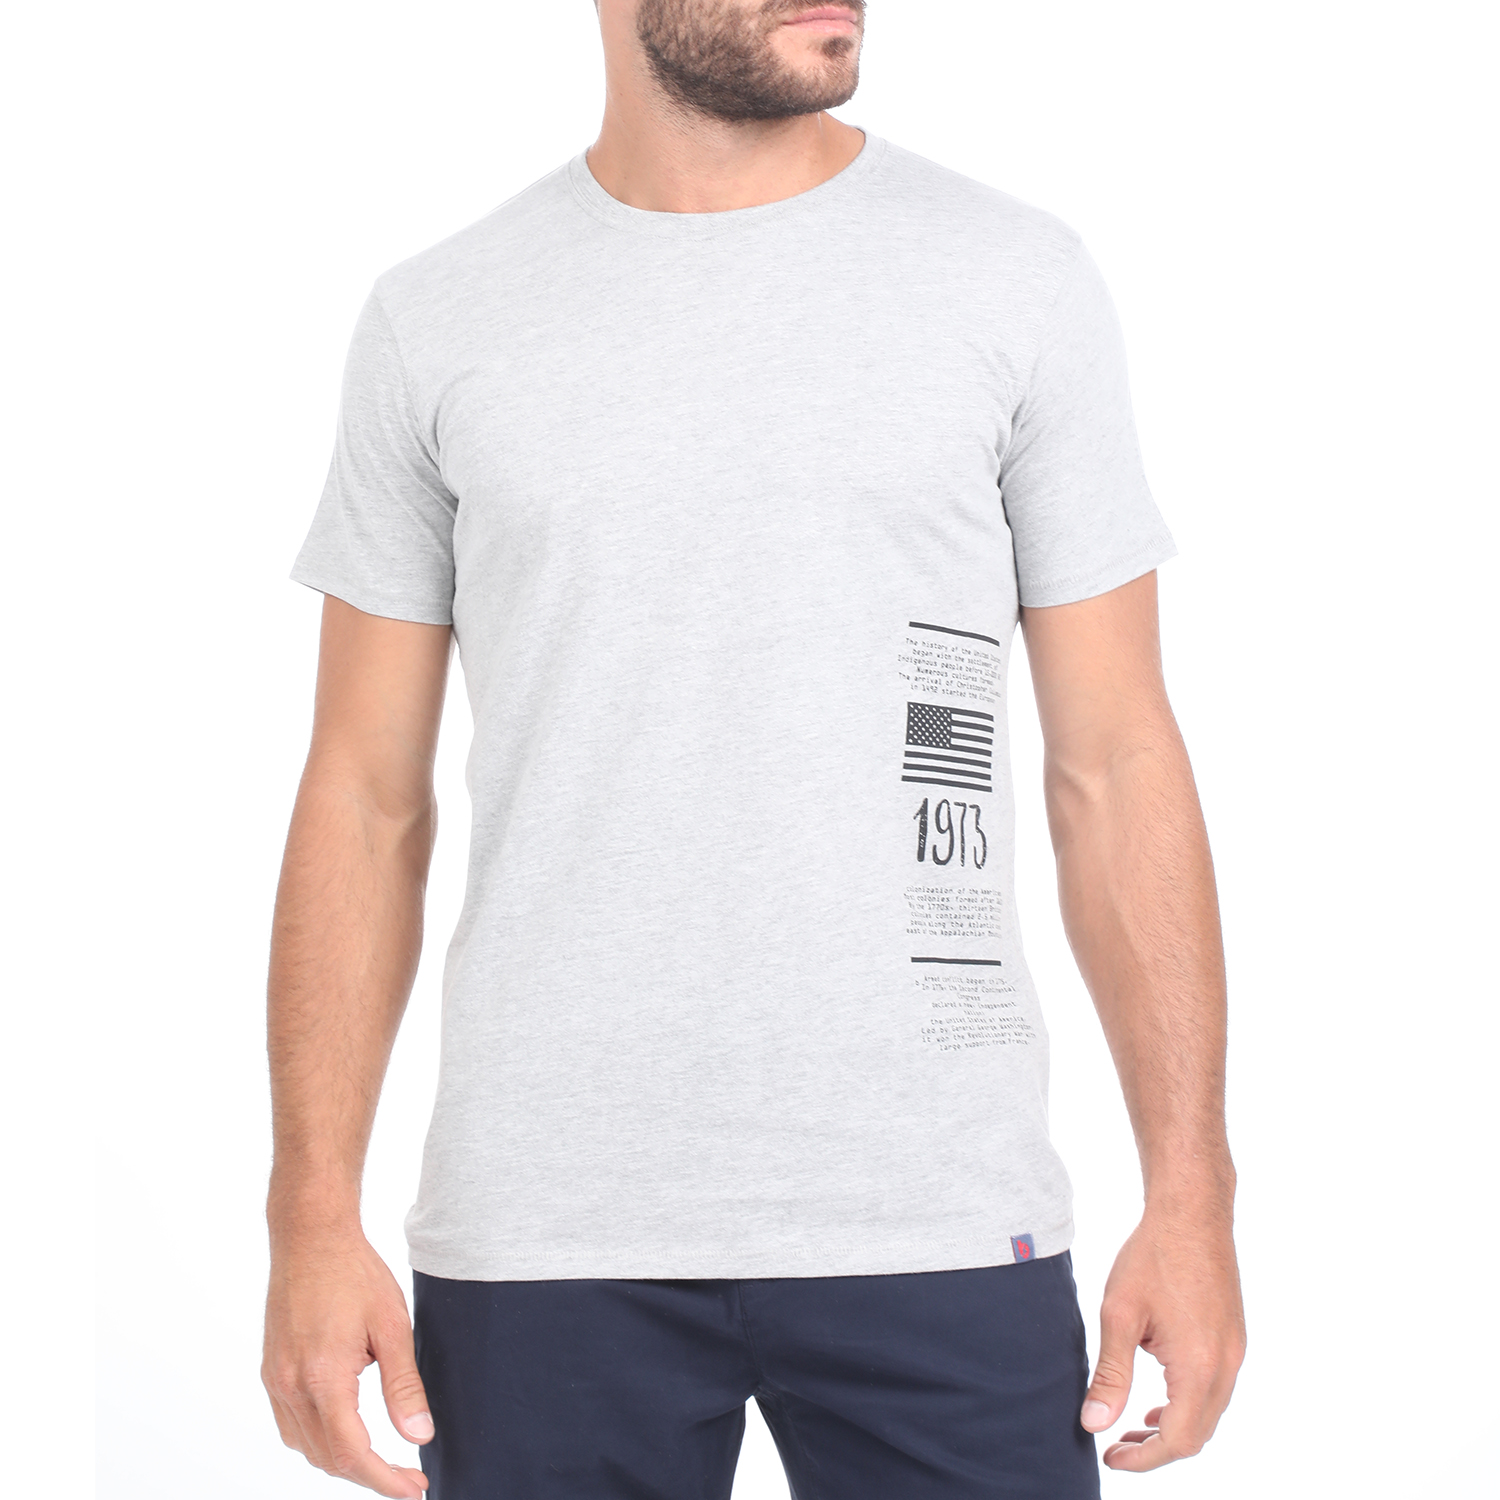 Ανδρικά/Ρούχα/Μπλούζες/Κοντομάνικες BATTERY - Ανδρικό t-shirt BATTERY PEACH γκρι